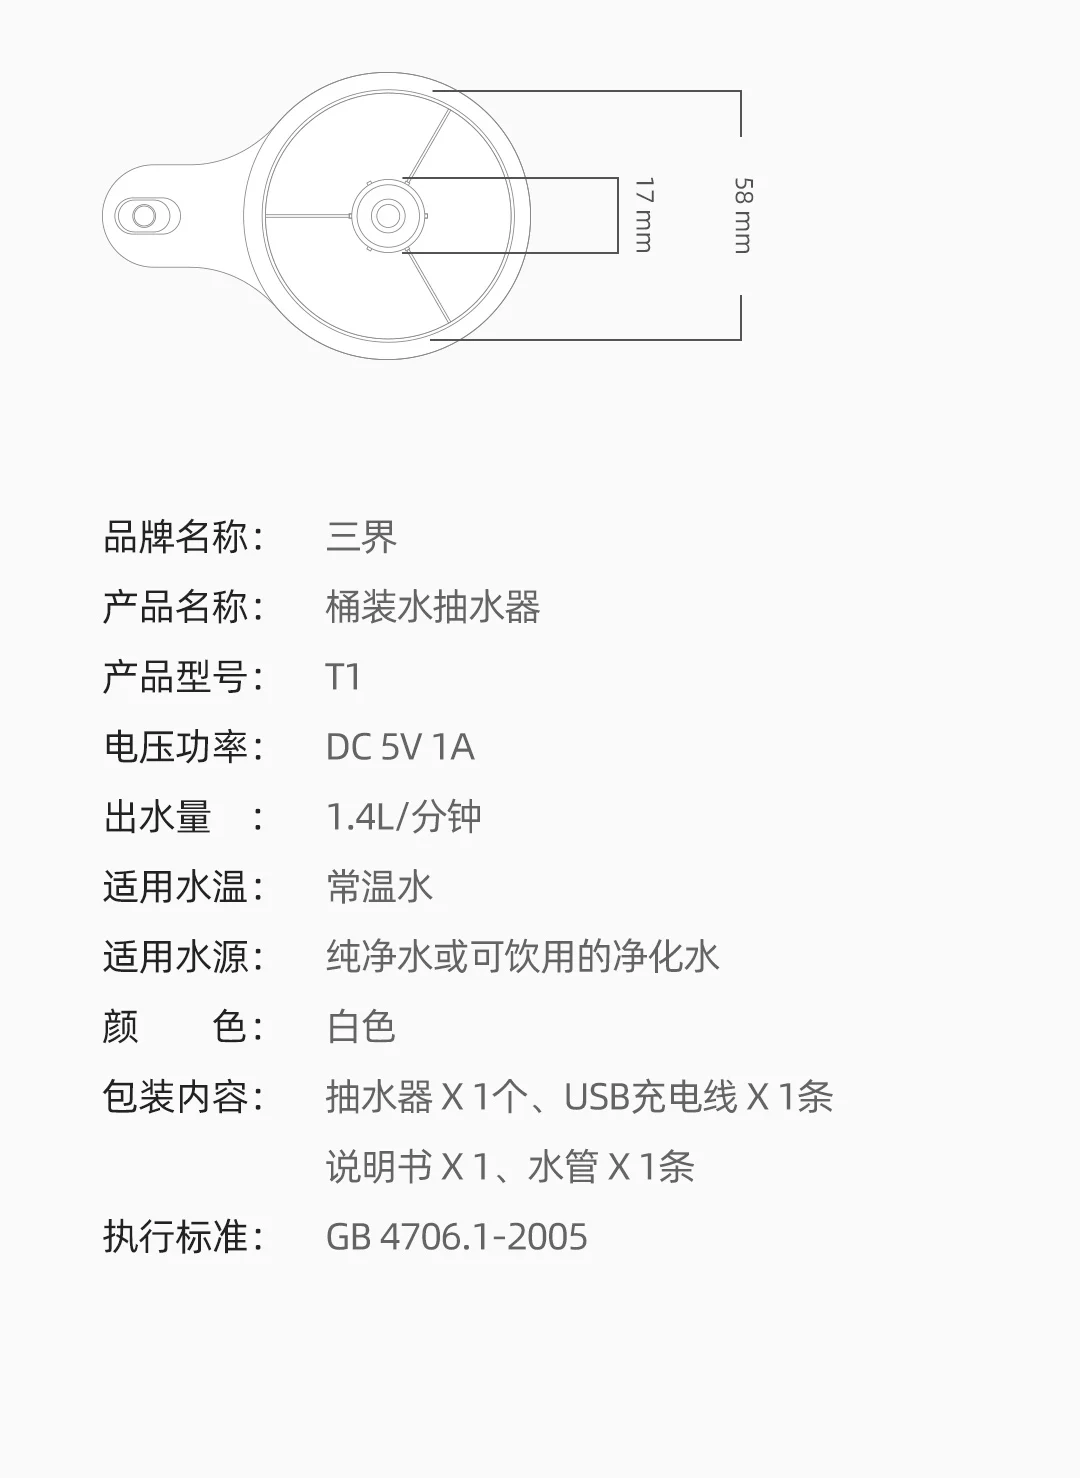 Новейший Xiaomi Mijia Youpin трехзонный T1 бутилированный водяной насос цельная водяная головка для всех типов бутилированной воды белого цвета